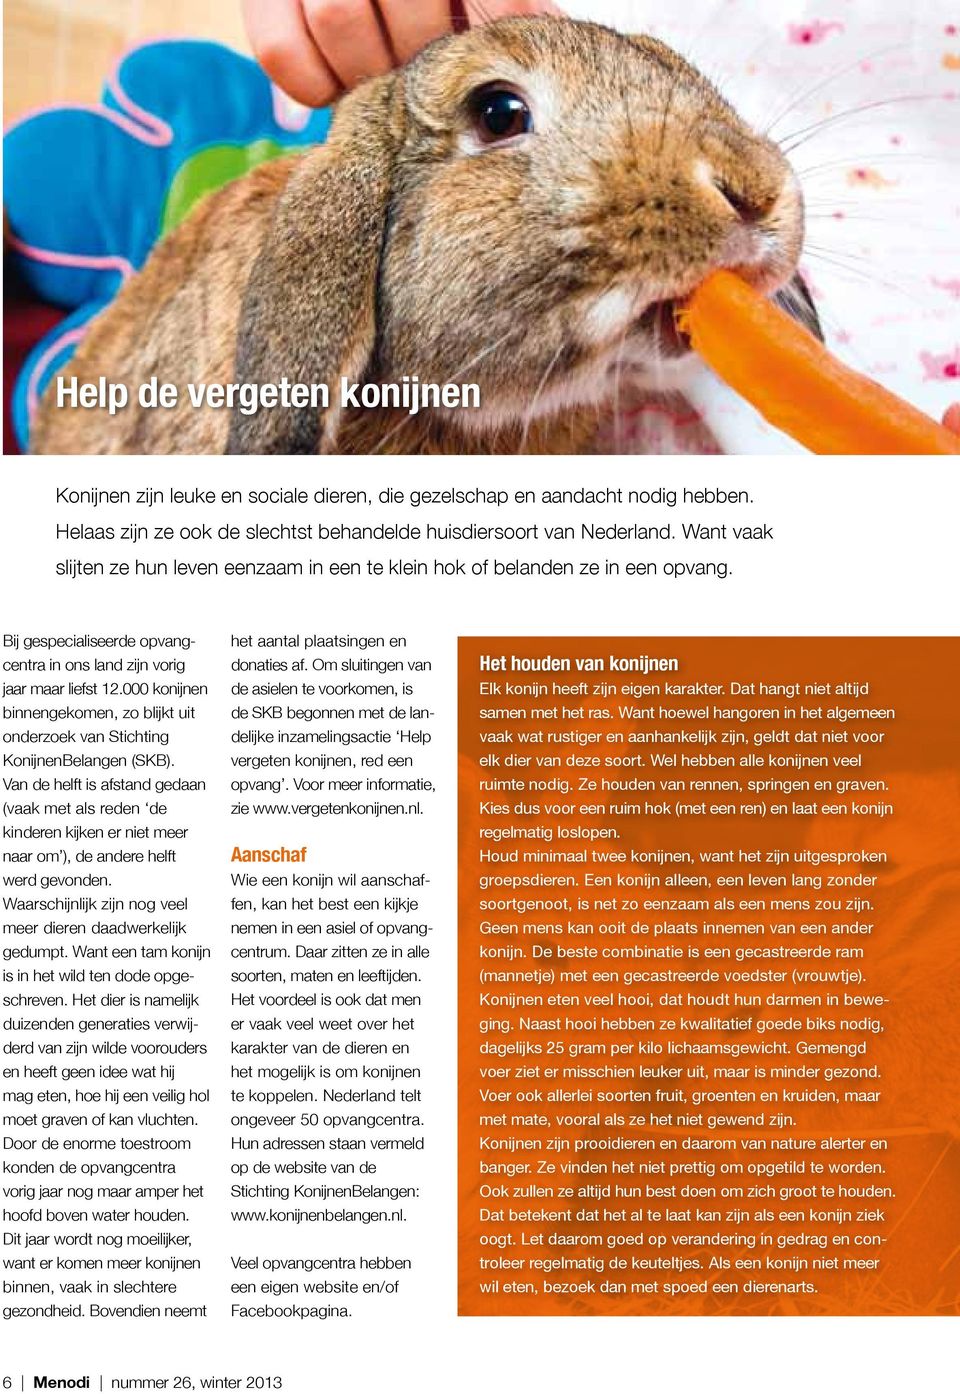 000 konijnen binnengekomen, zo blijkt uit onderzoek van Stichting KonijnenBelangen (SKB).